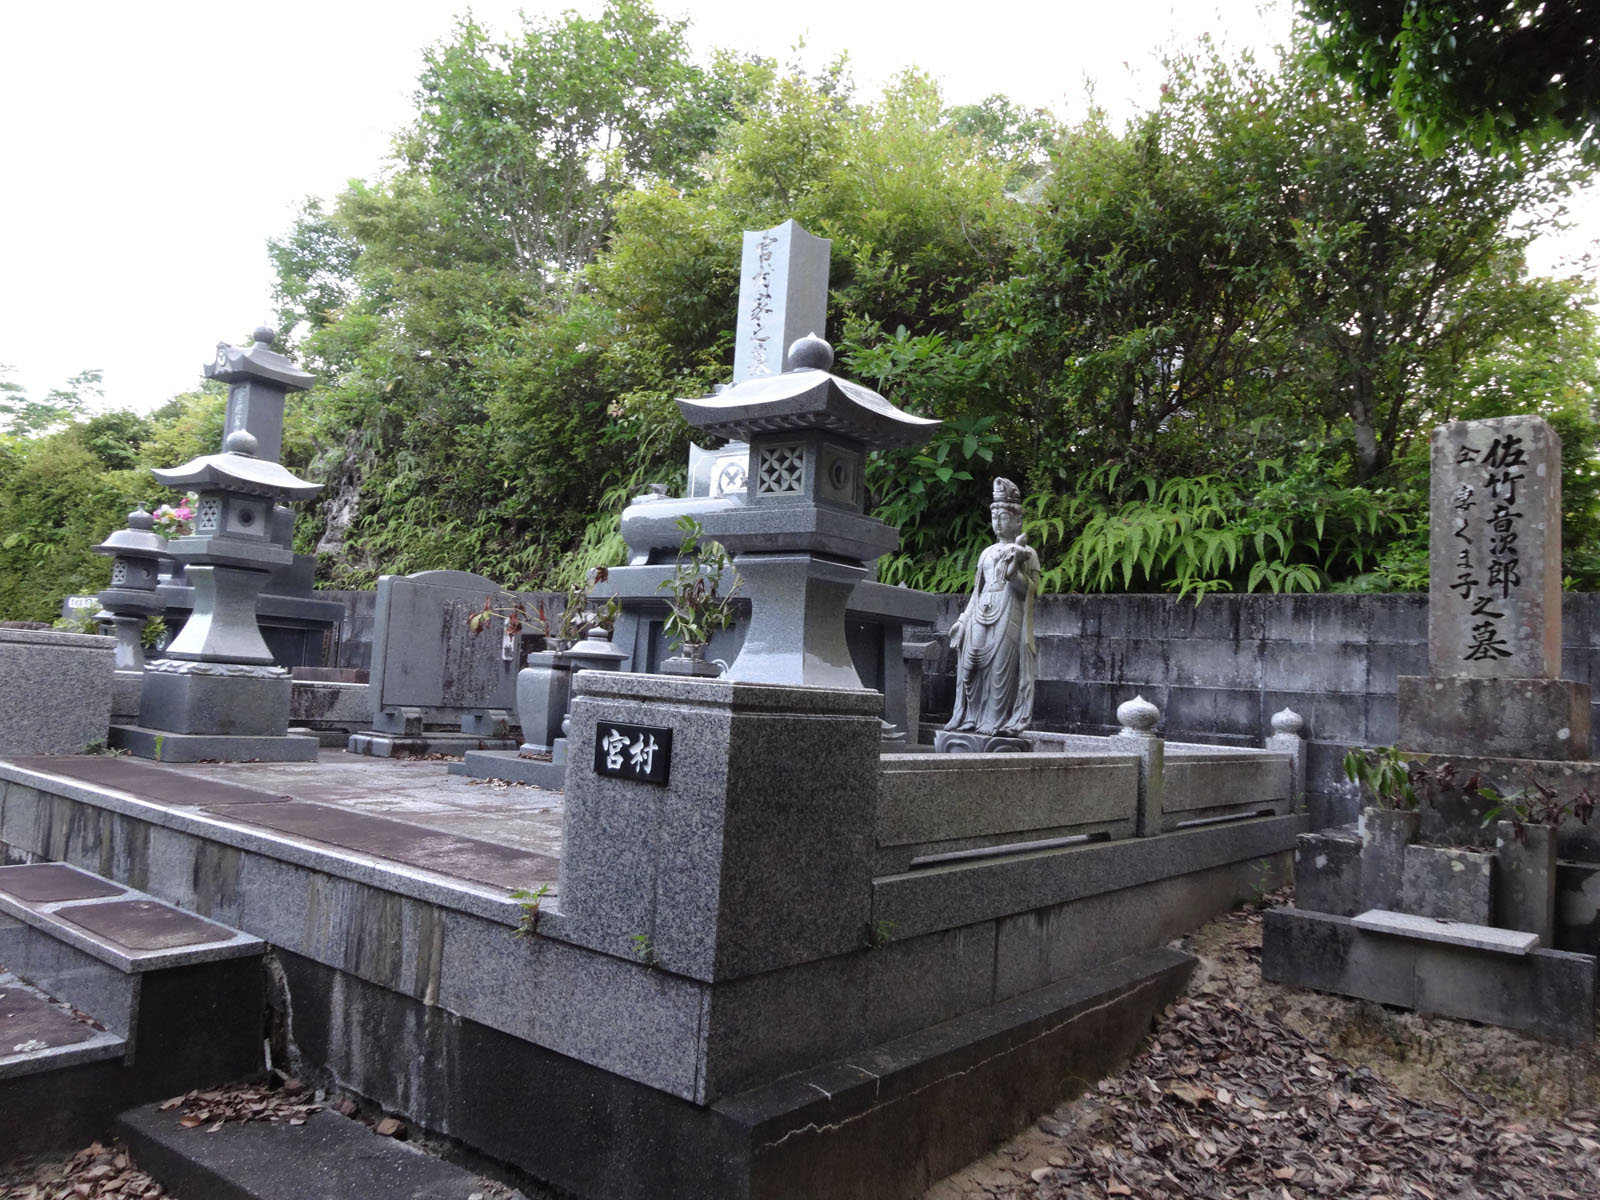 宮村家の納骨堂と並んでいた頃の音次郎の墓を音次郎の墓側から撮影した写真